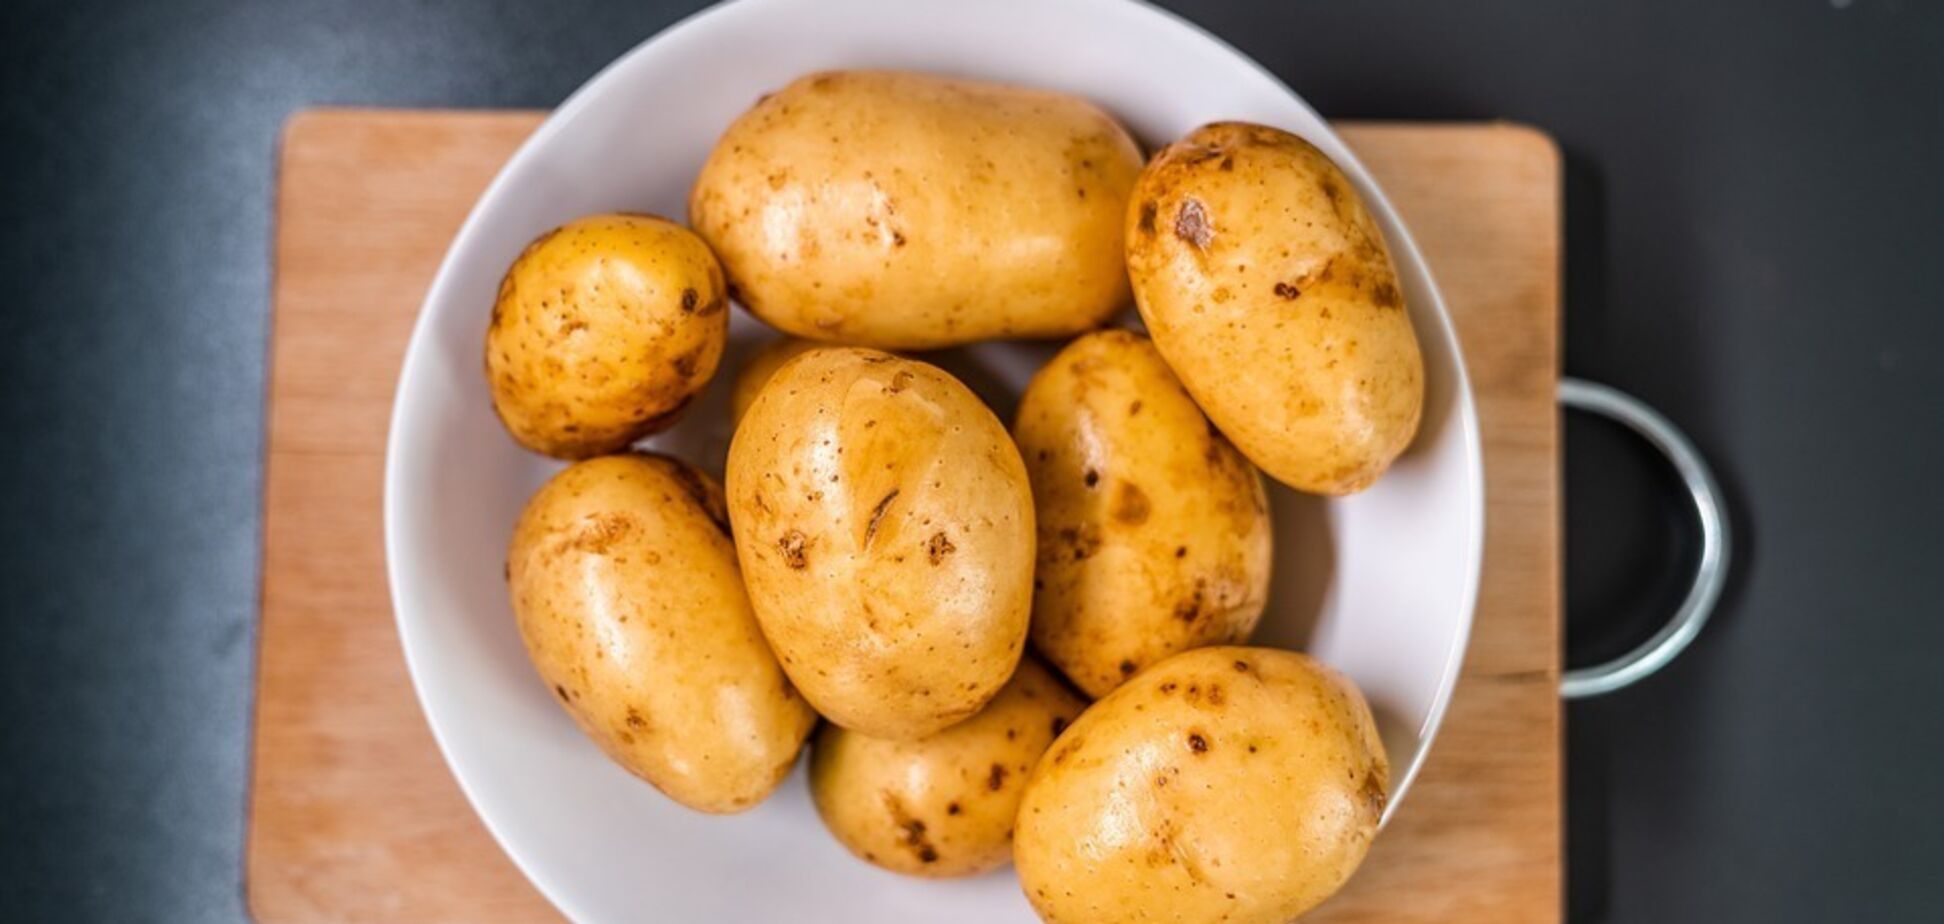 Що зробити з картоплею перед запіканням, щоб вона була м'якою: простий спосіб